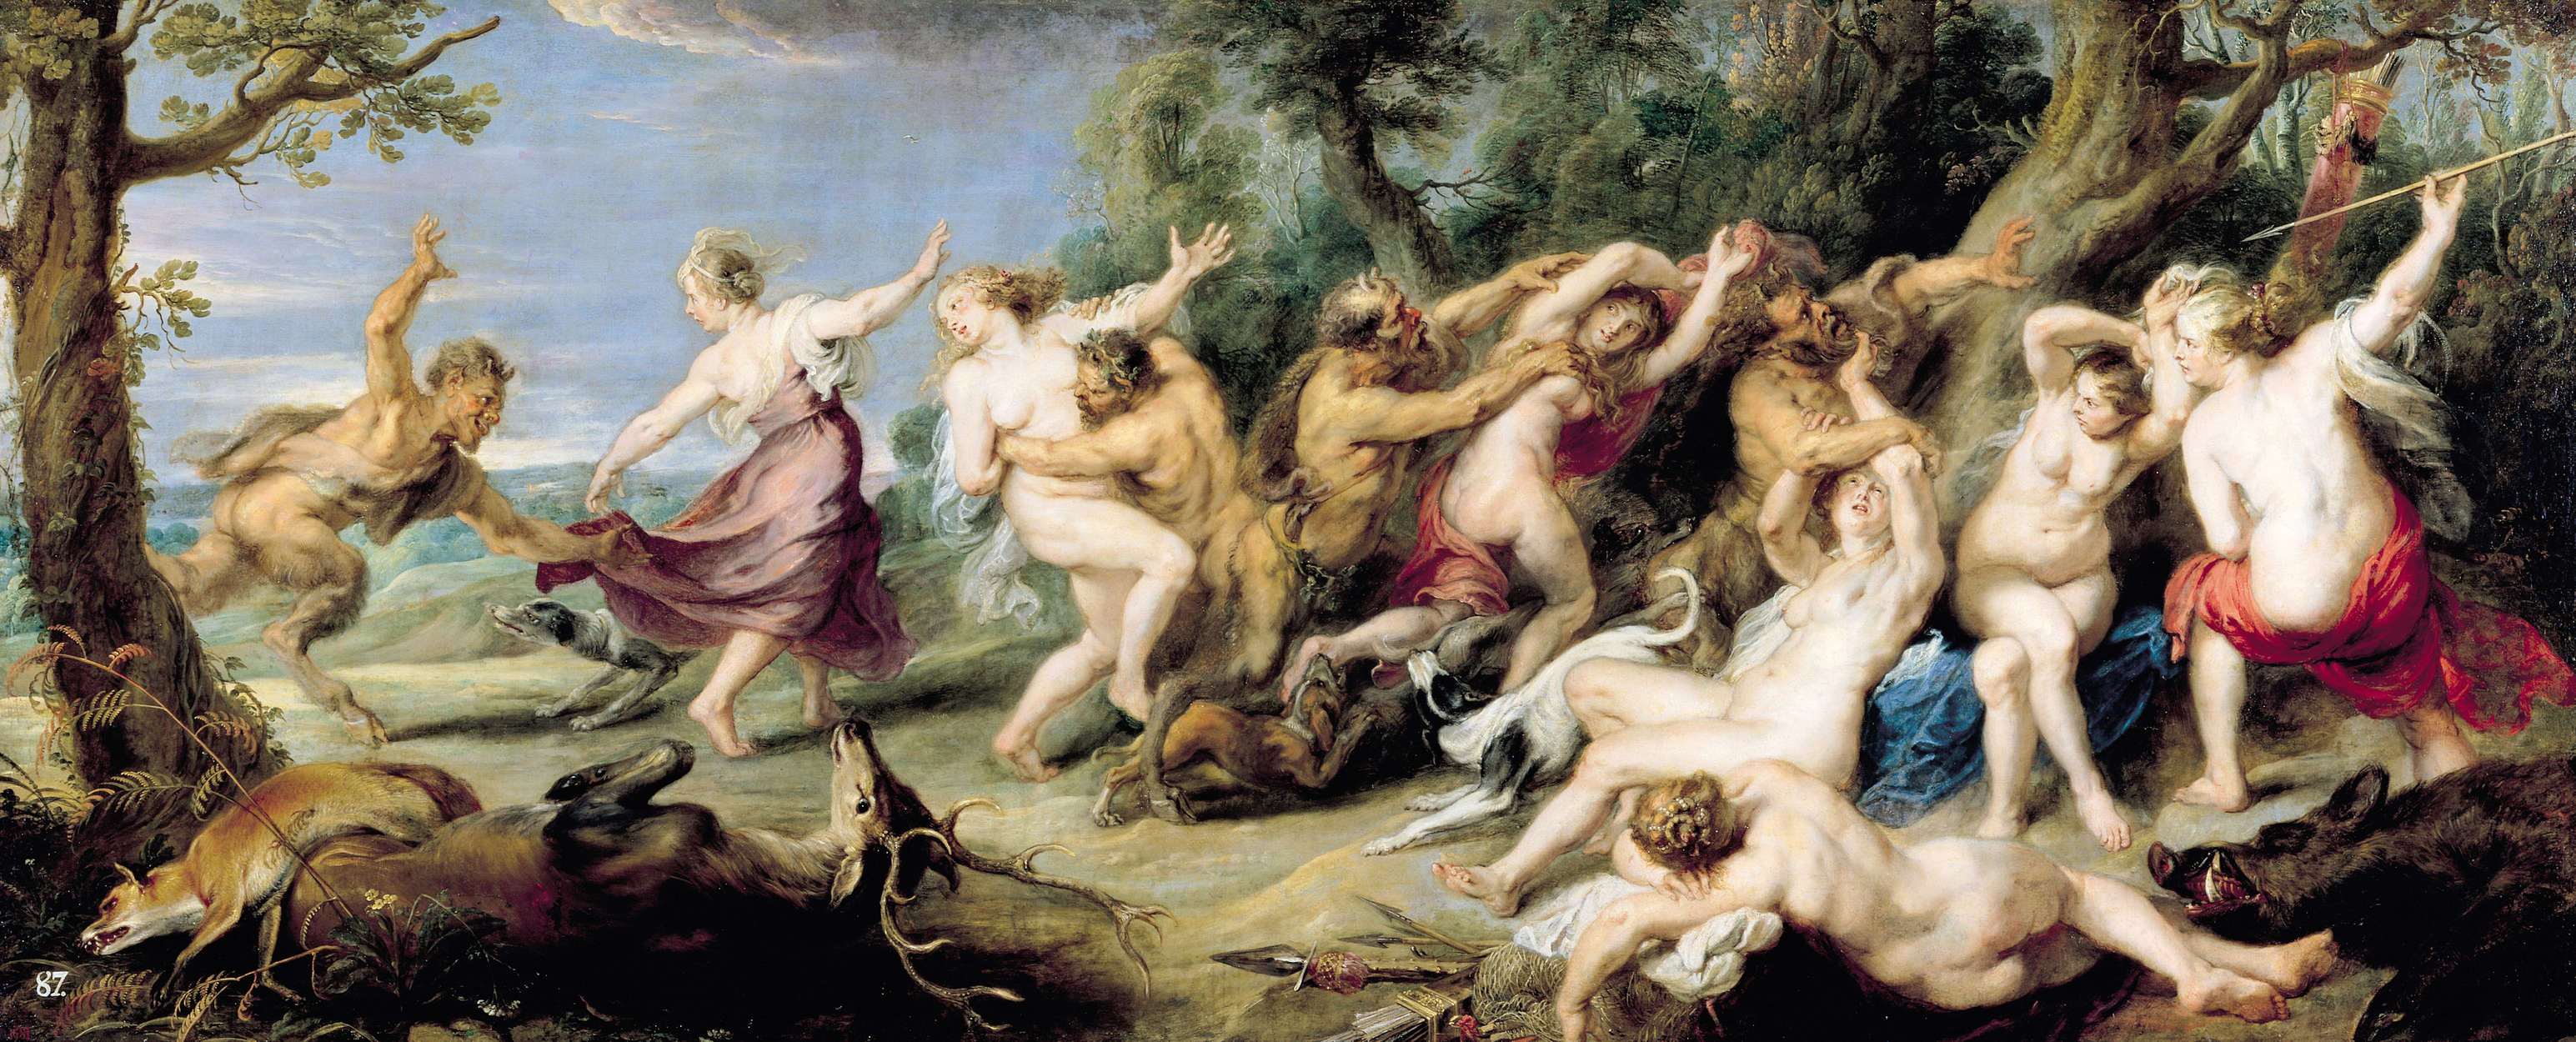             Muurschildering "Diana en haar Nimfen op jacht" door Peter Paul Rubens
        